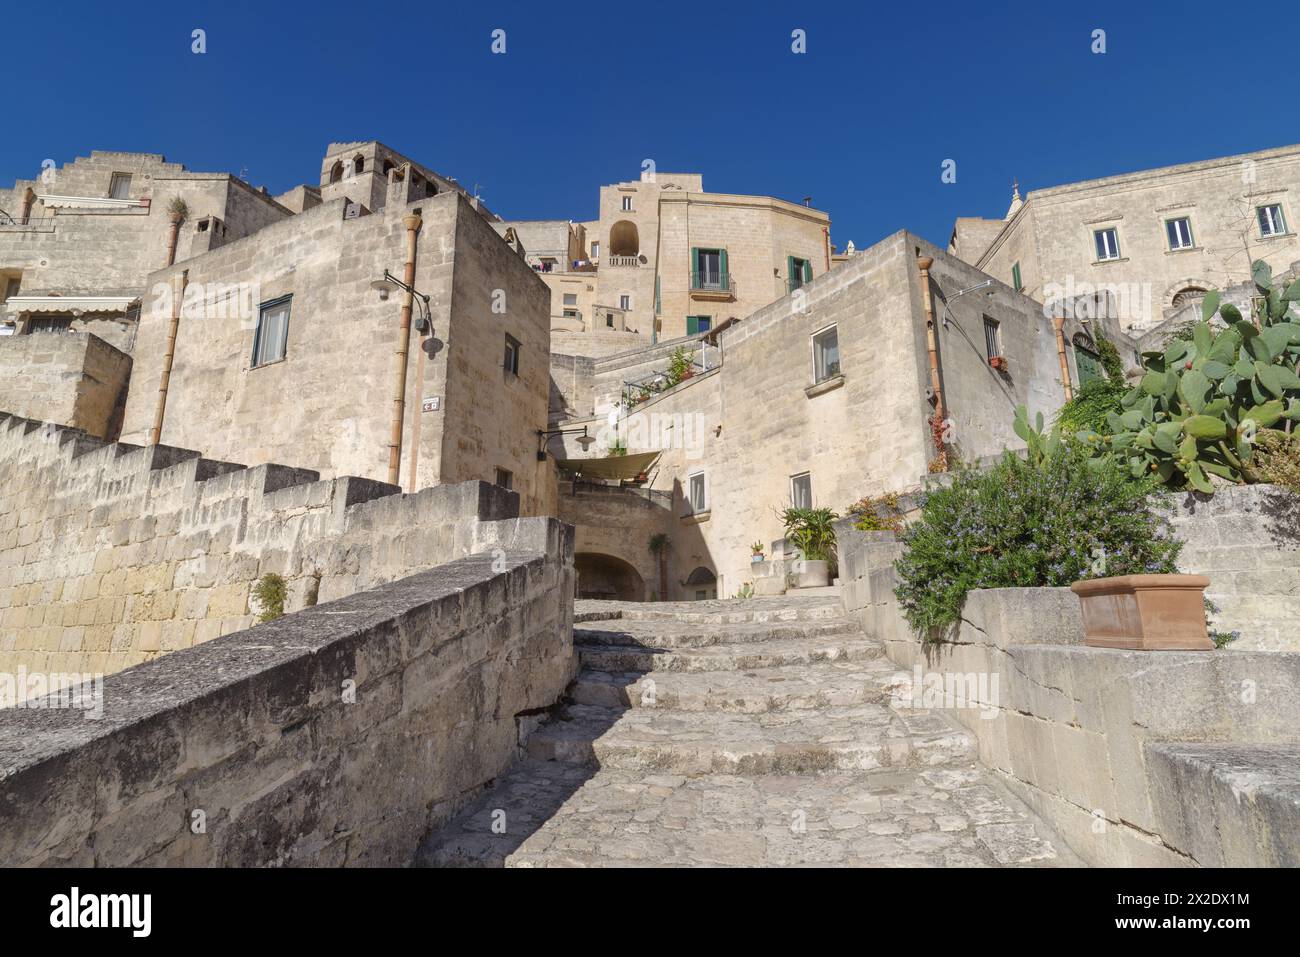 Via nel centro storico di Matera, Basilicata, Italia. Sito patrimonio dell'umanità dell'UNESCO Foto Stock